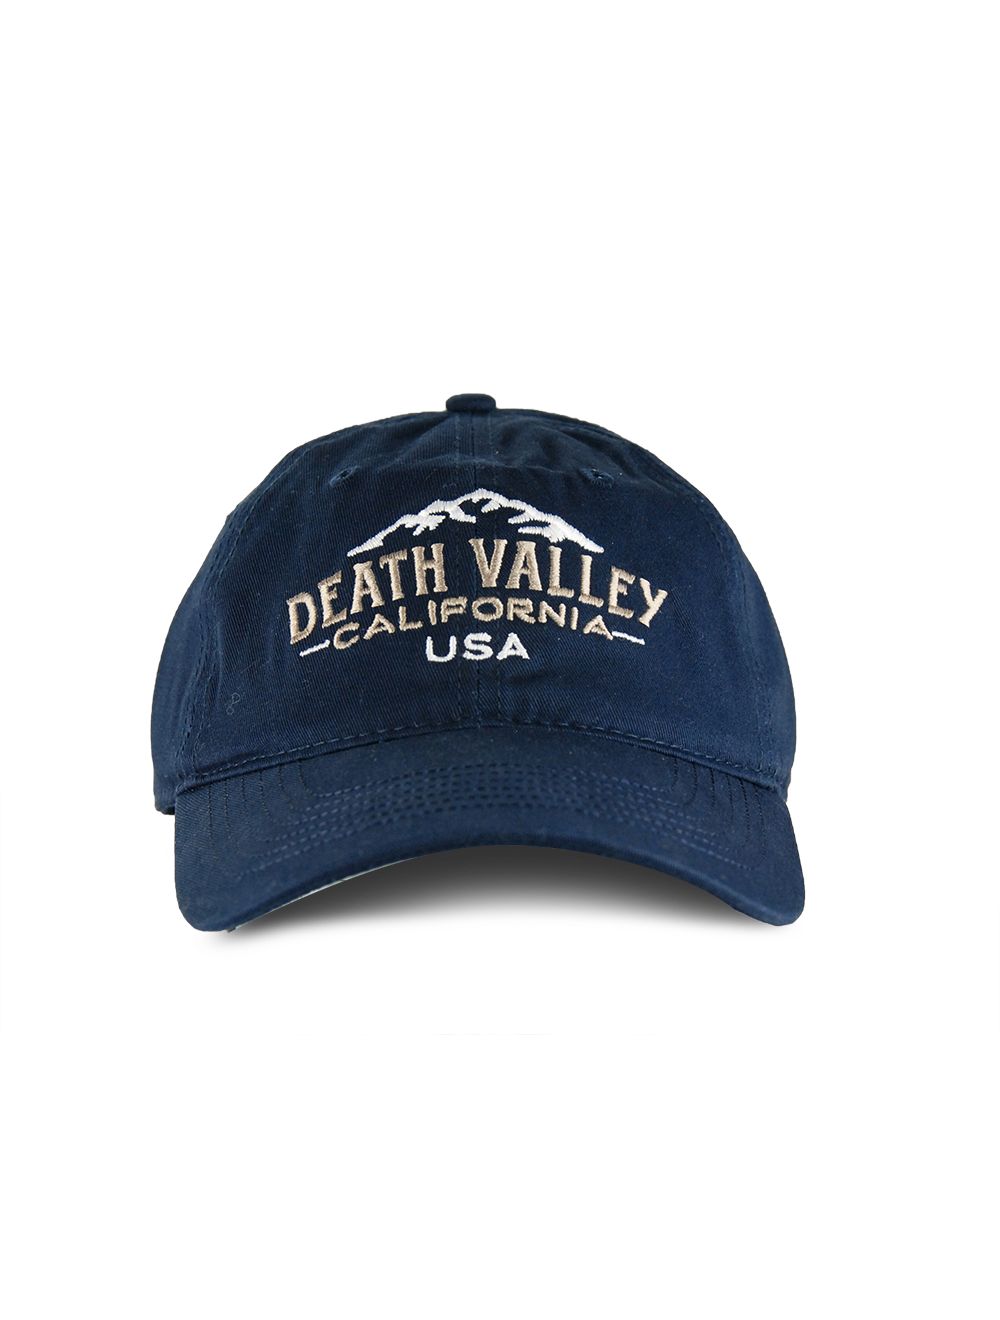 Unisex Men Adjustable Death Valley National Park Baseball Caps Athletic Unique Hats